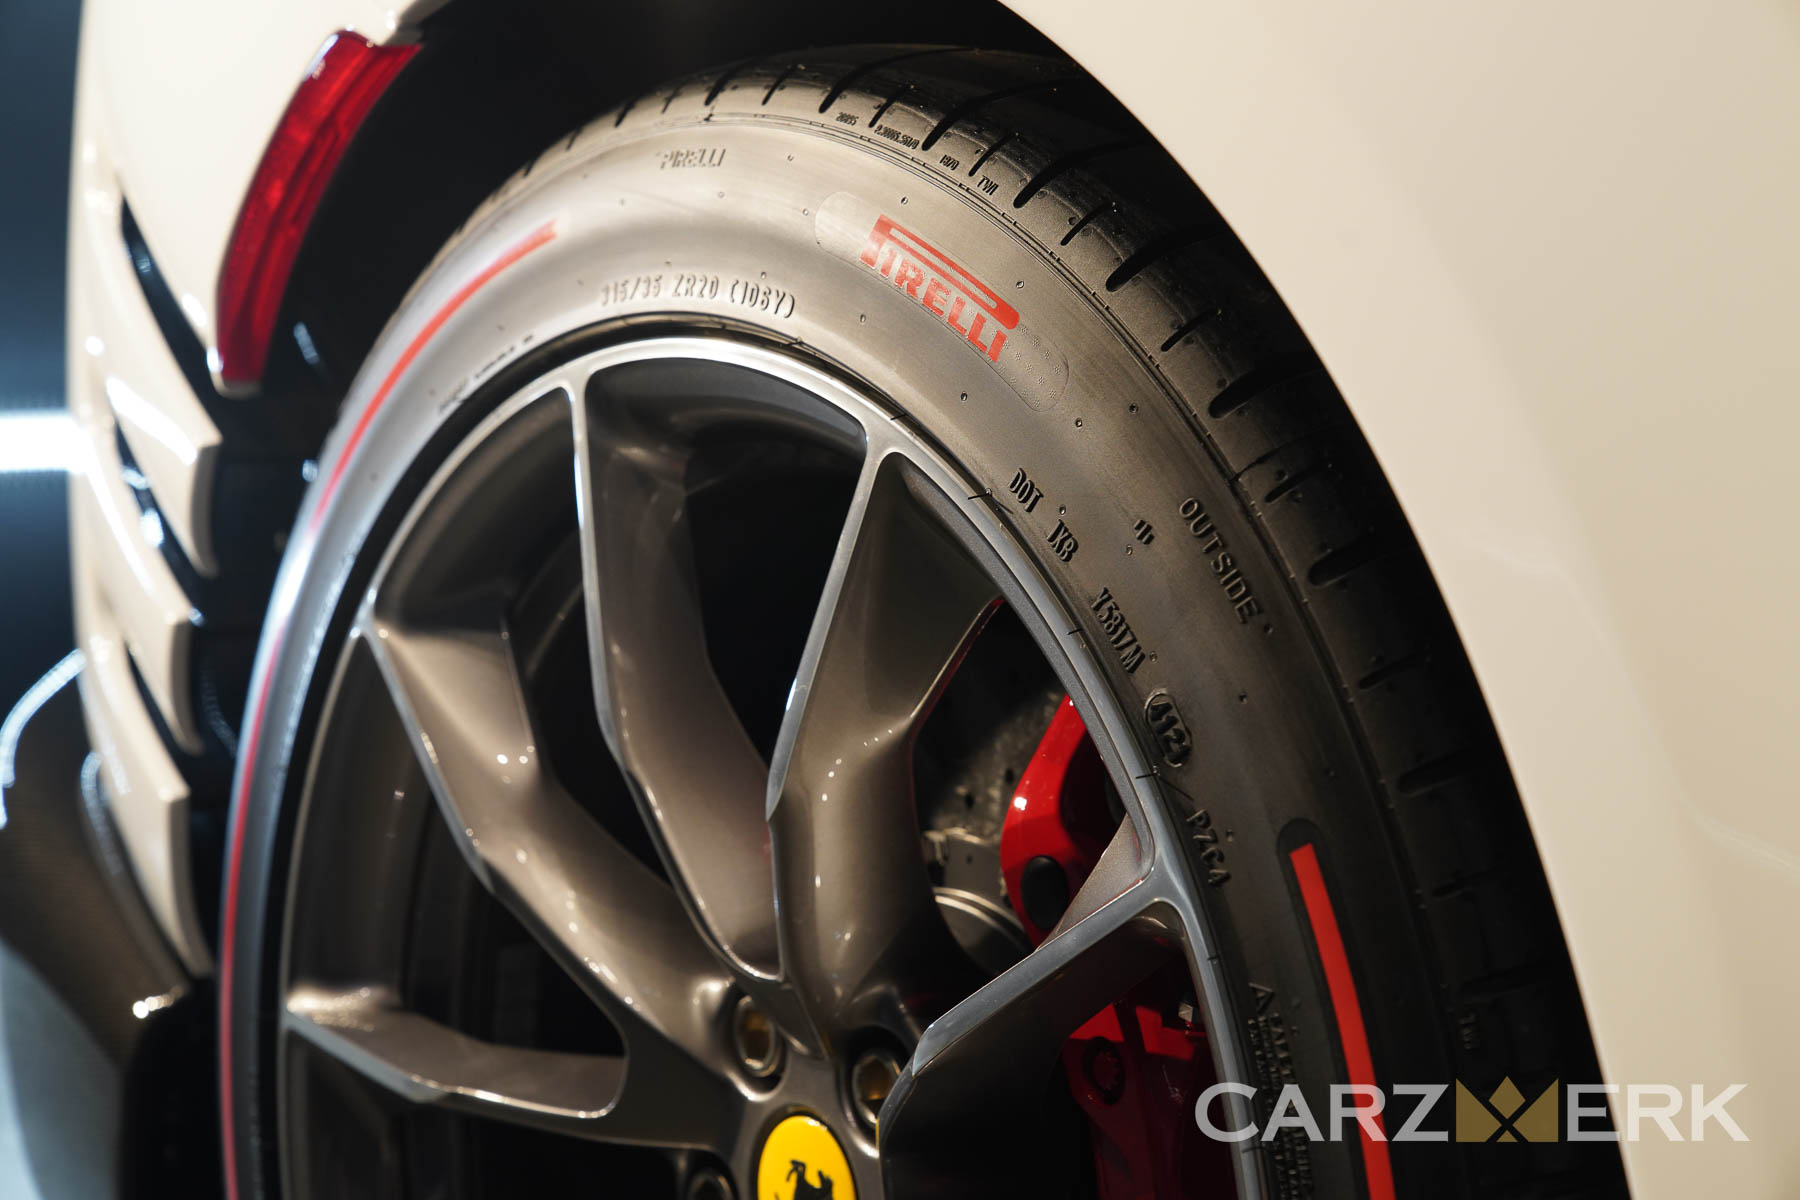 2022 Ferrari 812 Competizione - Bianco Cervino - Rear wheels and Pirelli tires 315/35ZR20